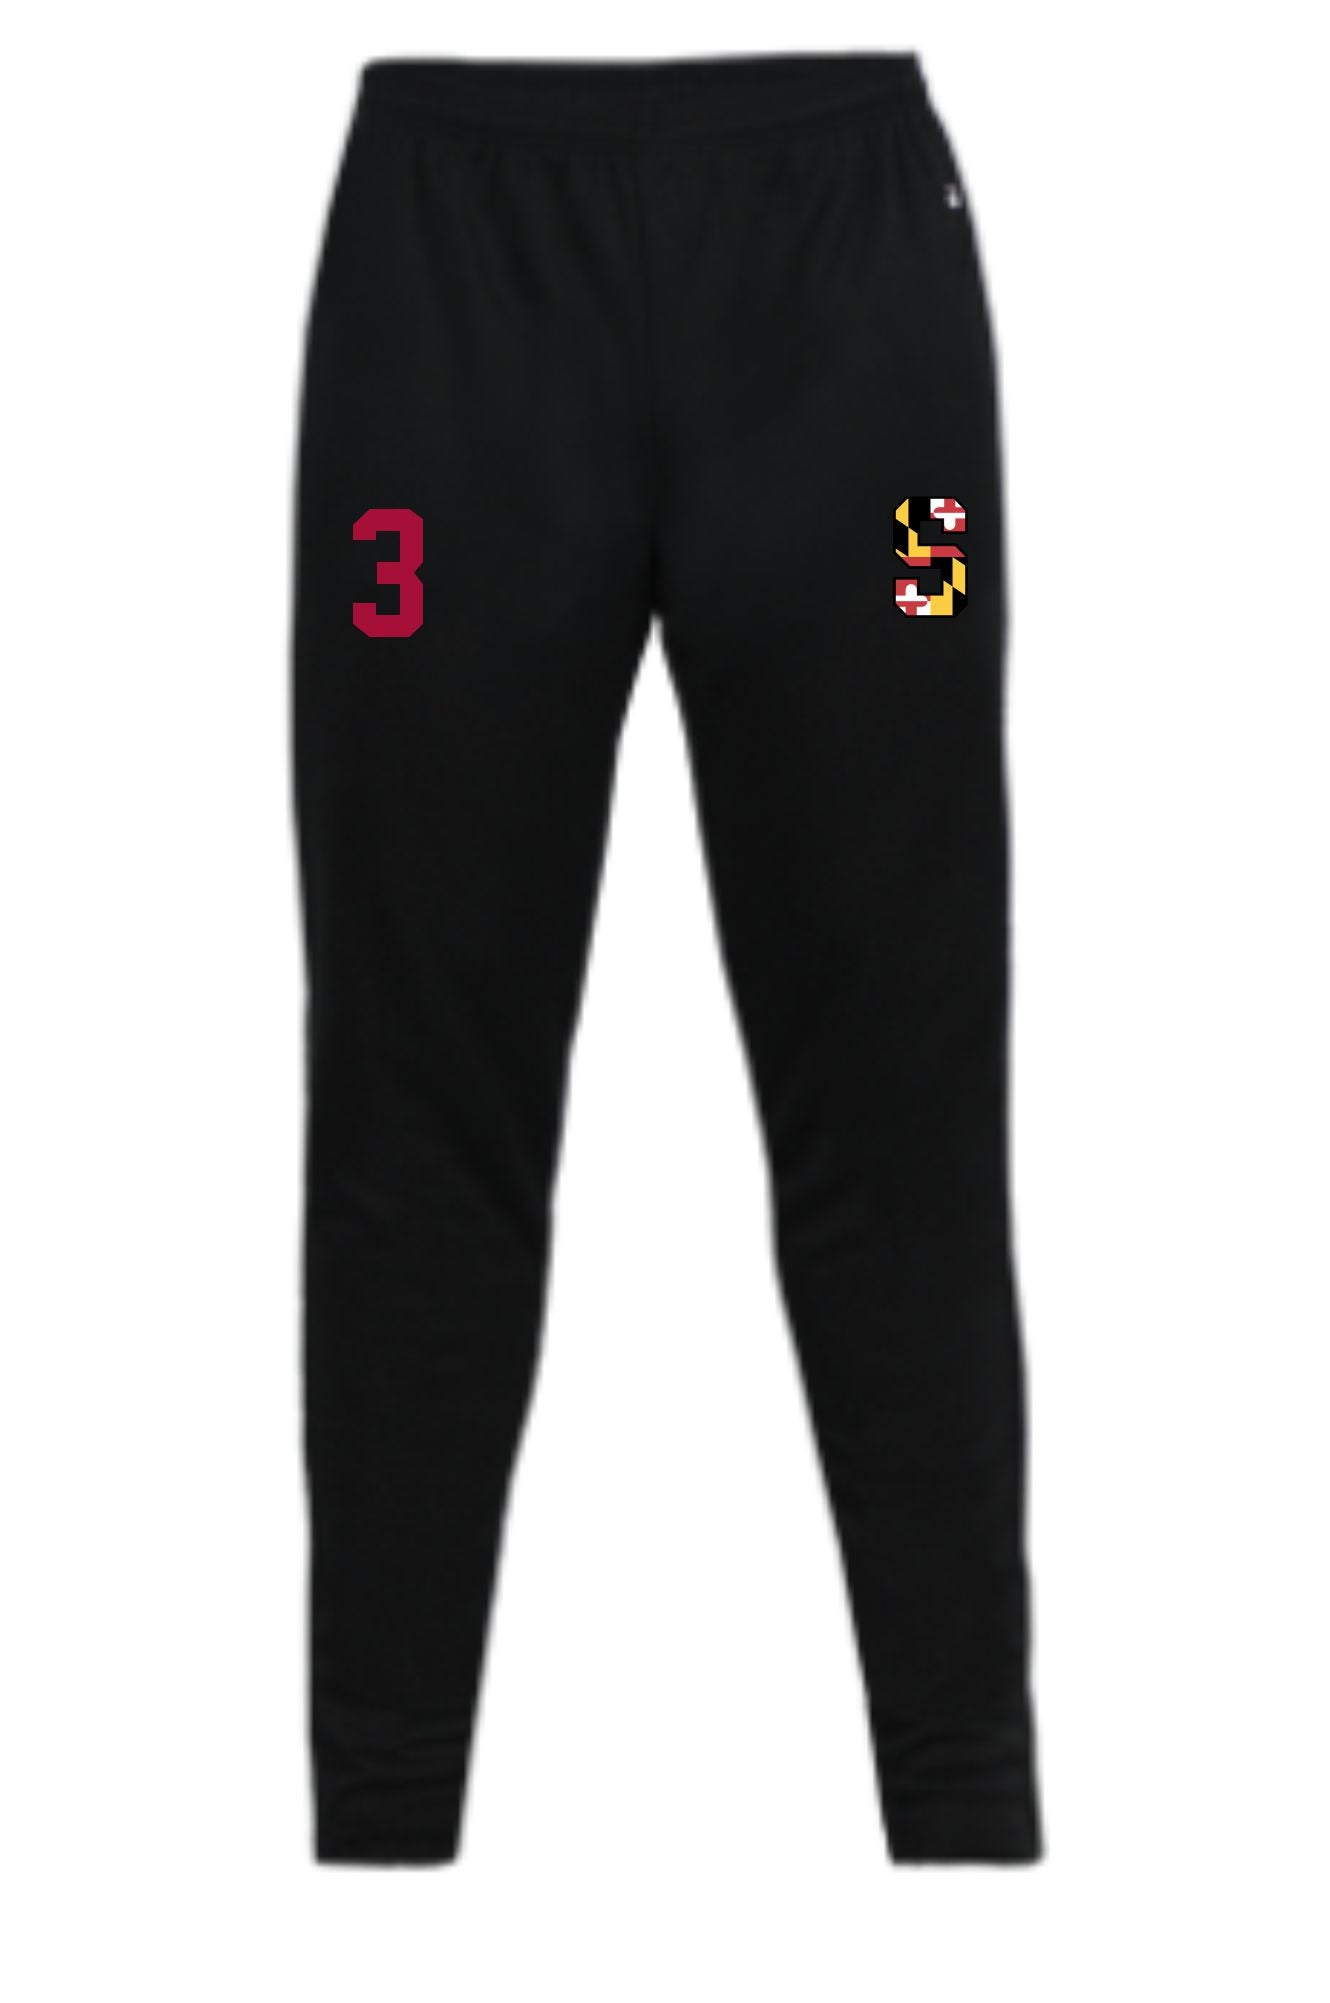 Senators Badger Trainer Pants - 3 colors available